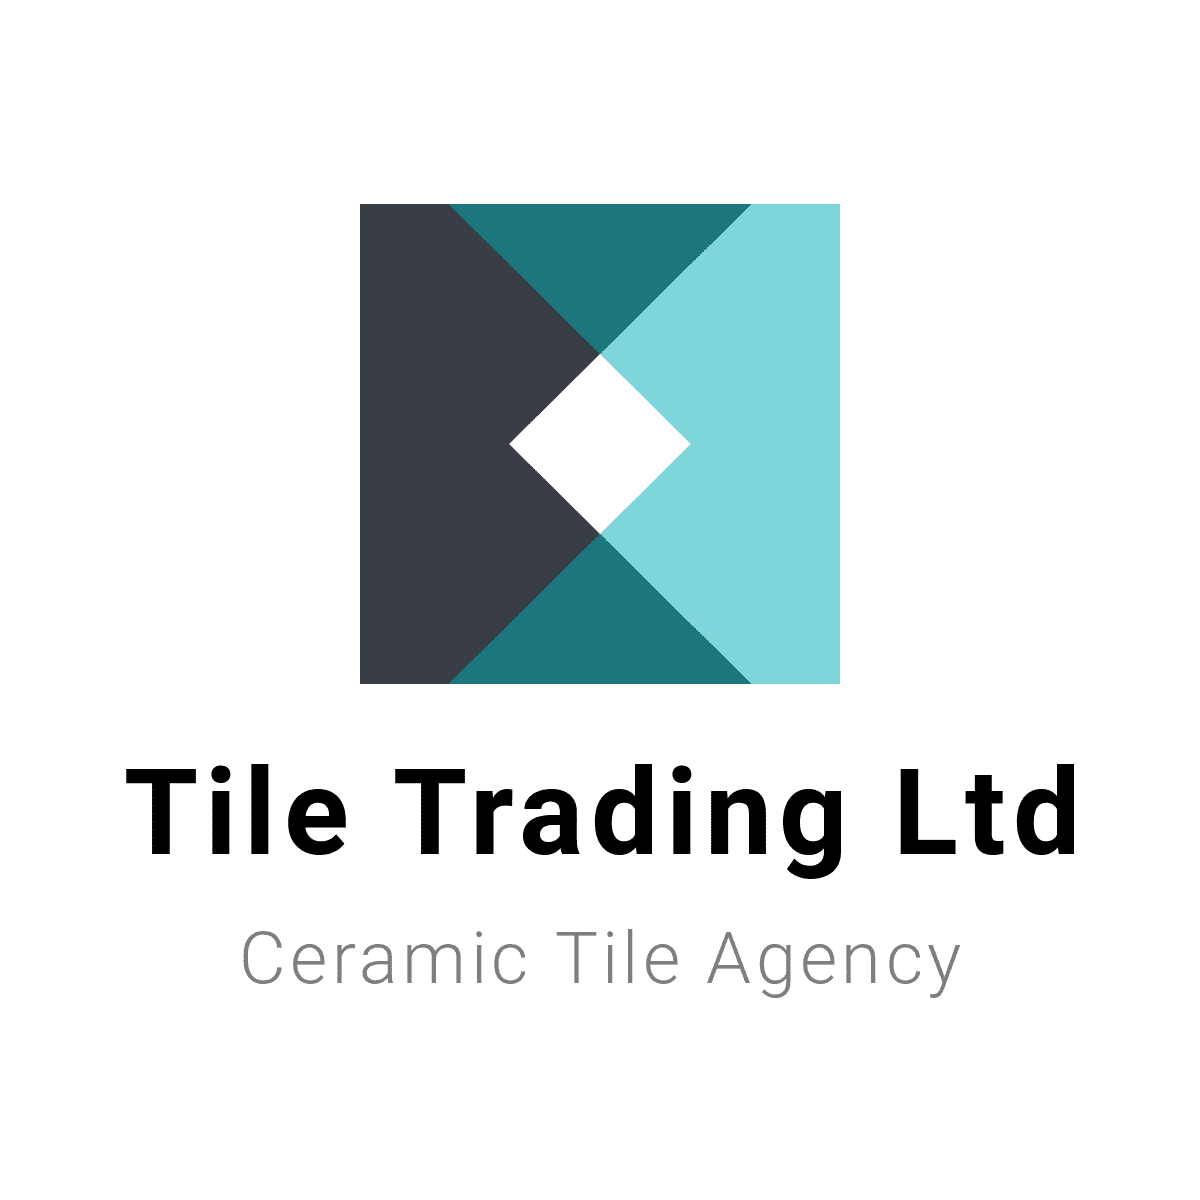 Tile Trading Ltd